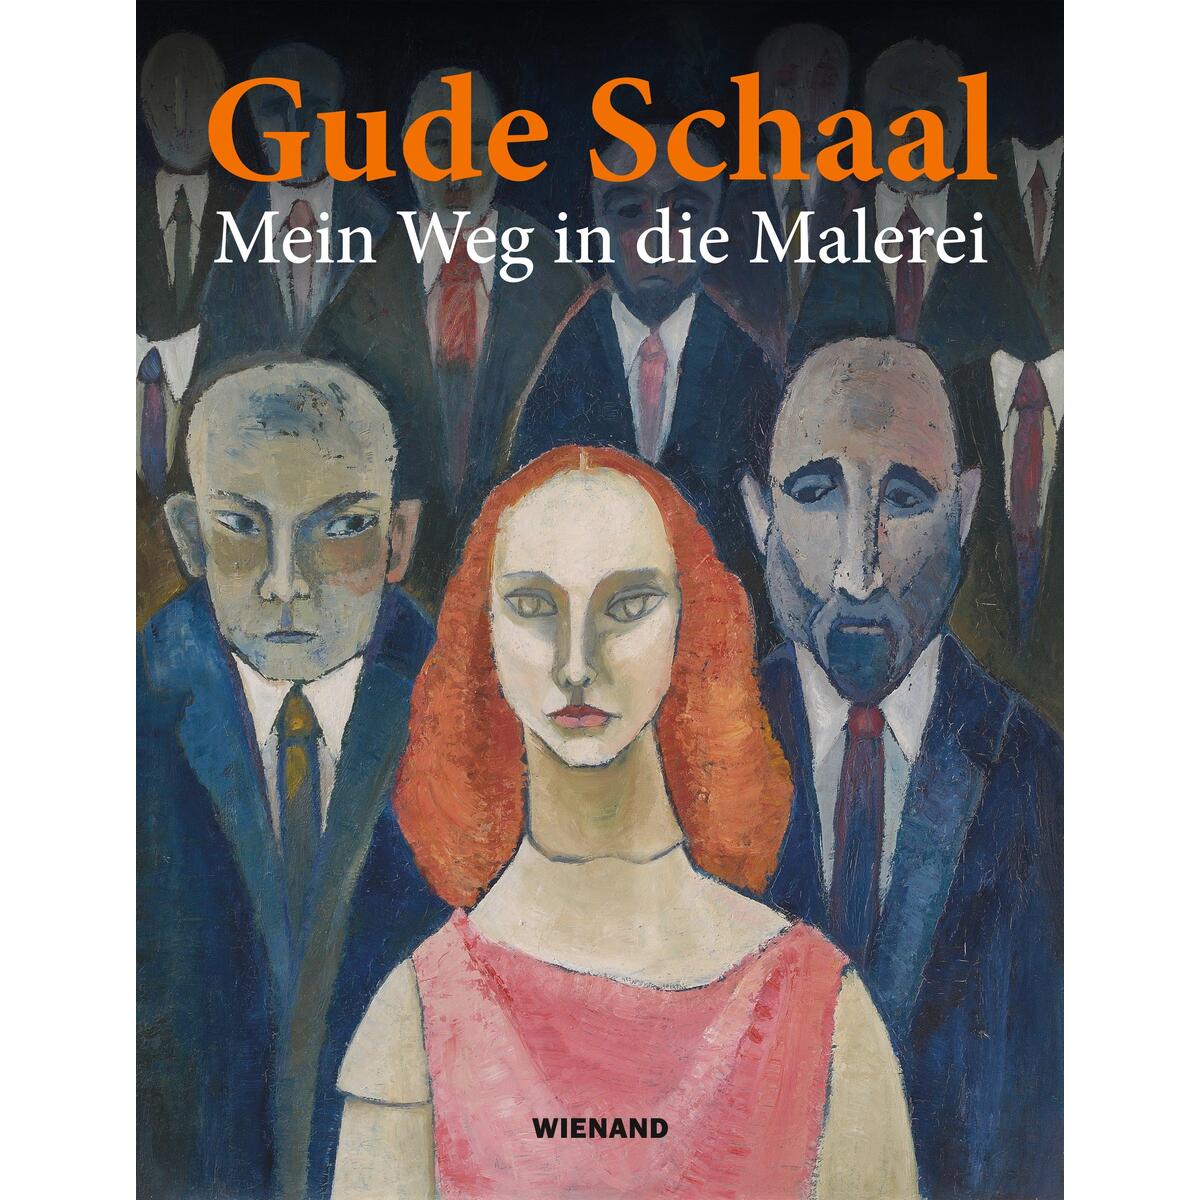 Gude Schaal von Wienand Verlag & Medien